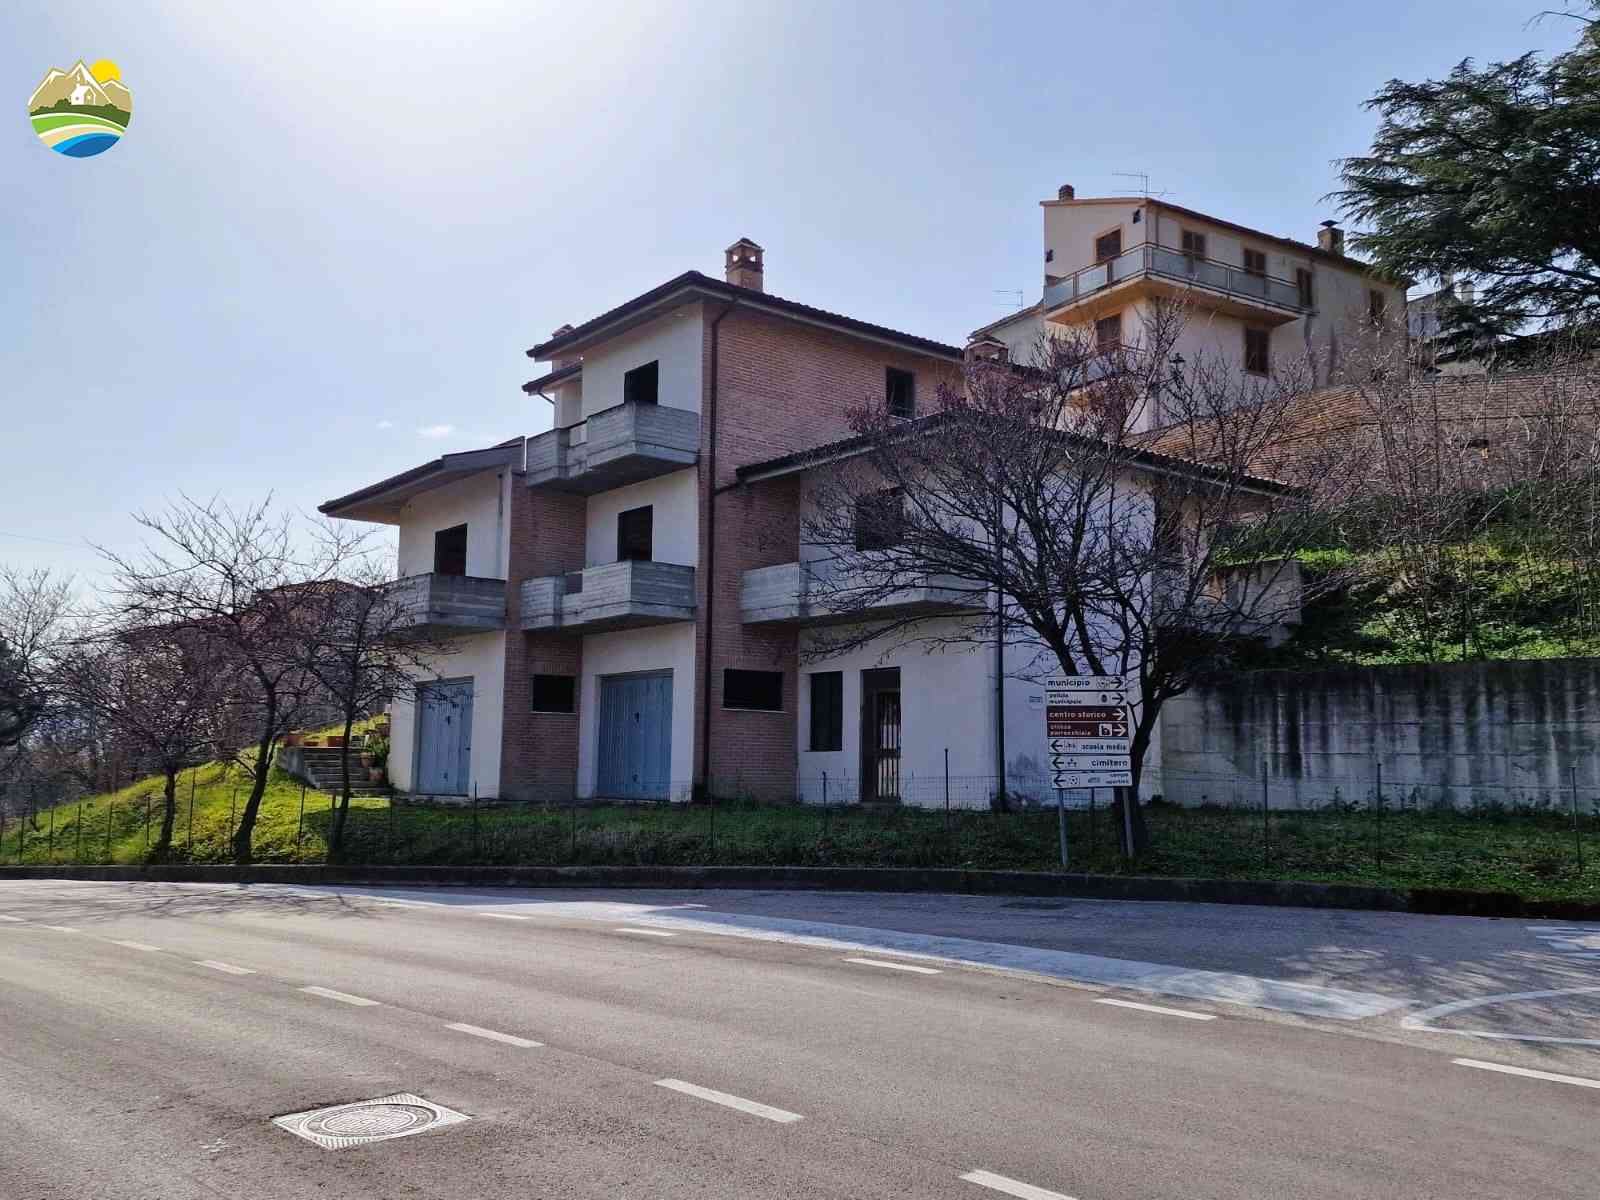 Villa Villa for sale Castilenti (TE), Villa Mandorlo - Castilenti - EUR 129.450 750